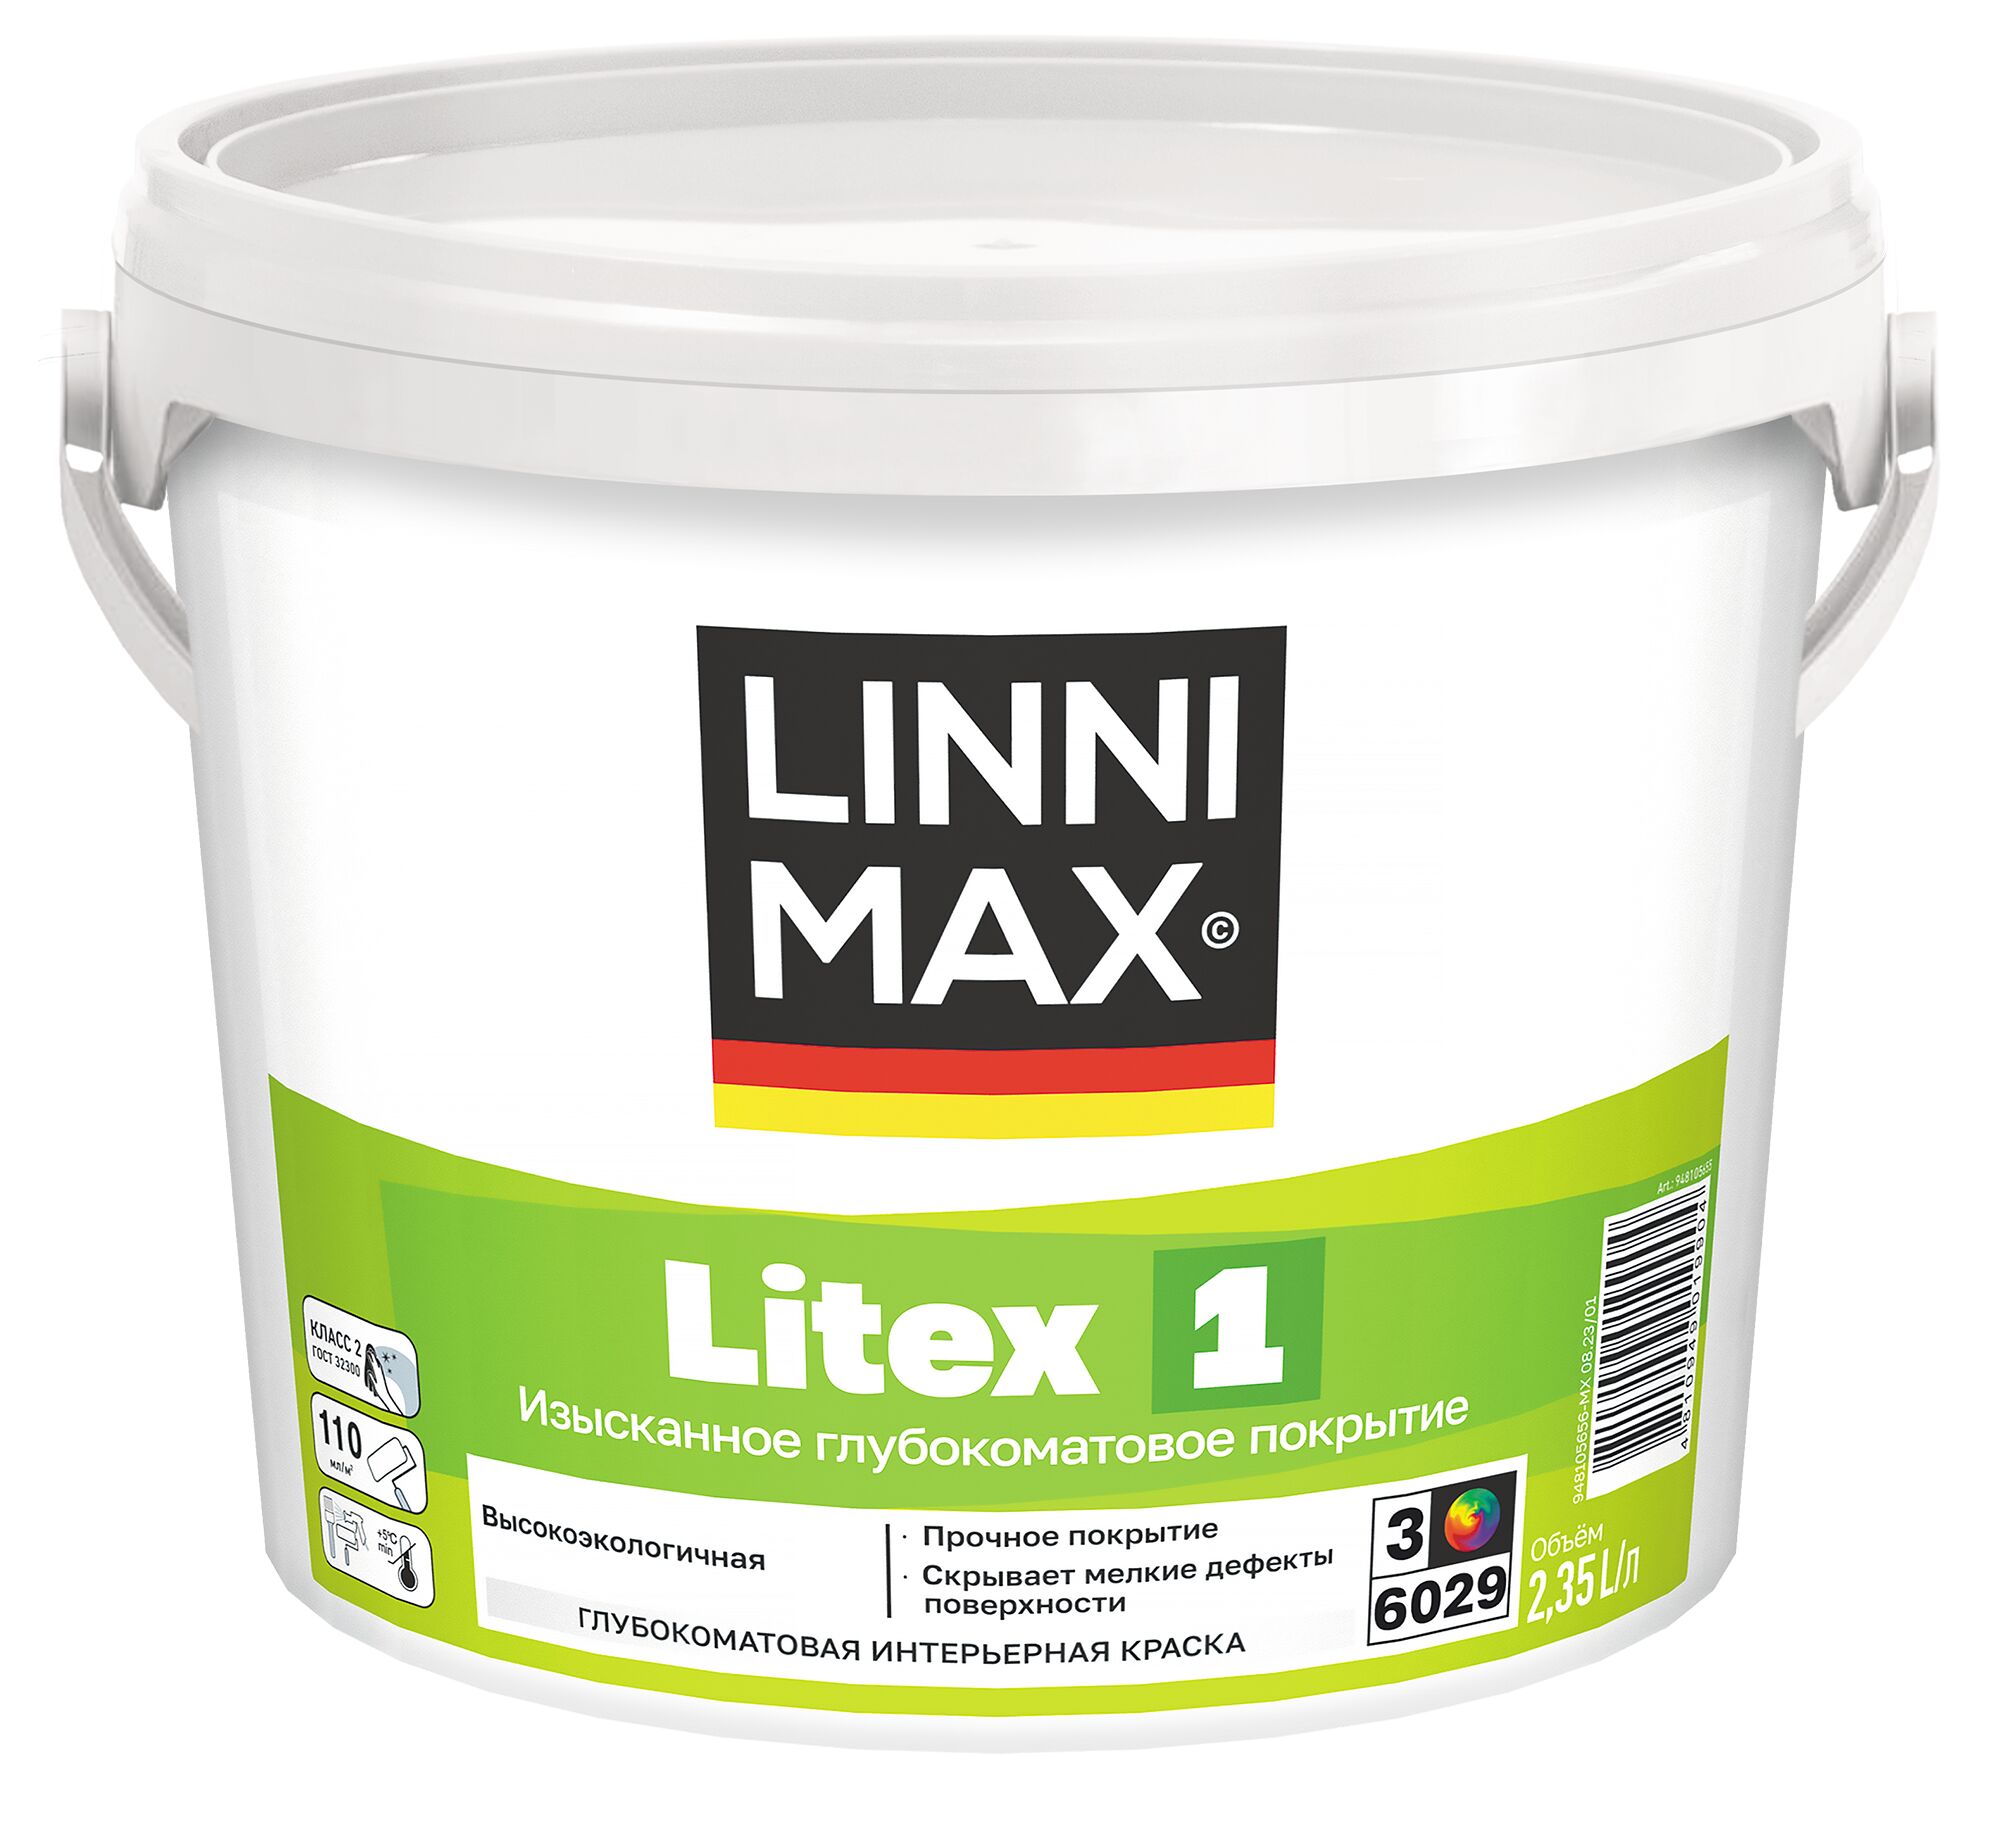 Litex 1 2,35л Краска водно-дисперсионная д/внутренних работ База3 LINNIMAX, Litex 1 2,35л Краска водно-дисперсионная д/внутренних работ База3 LINNIMAX